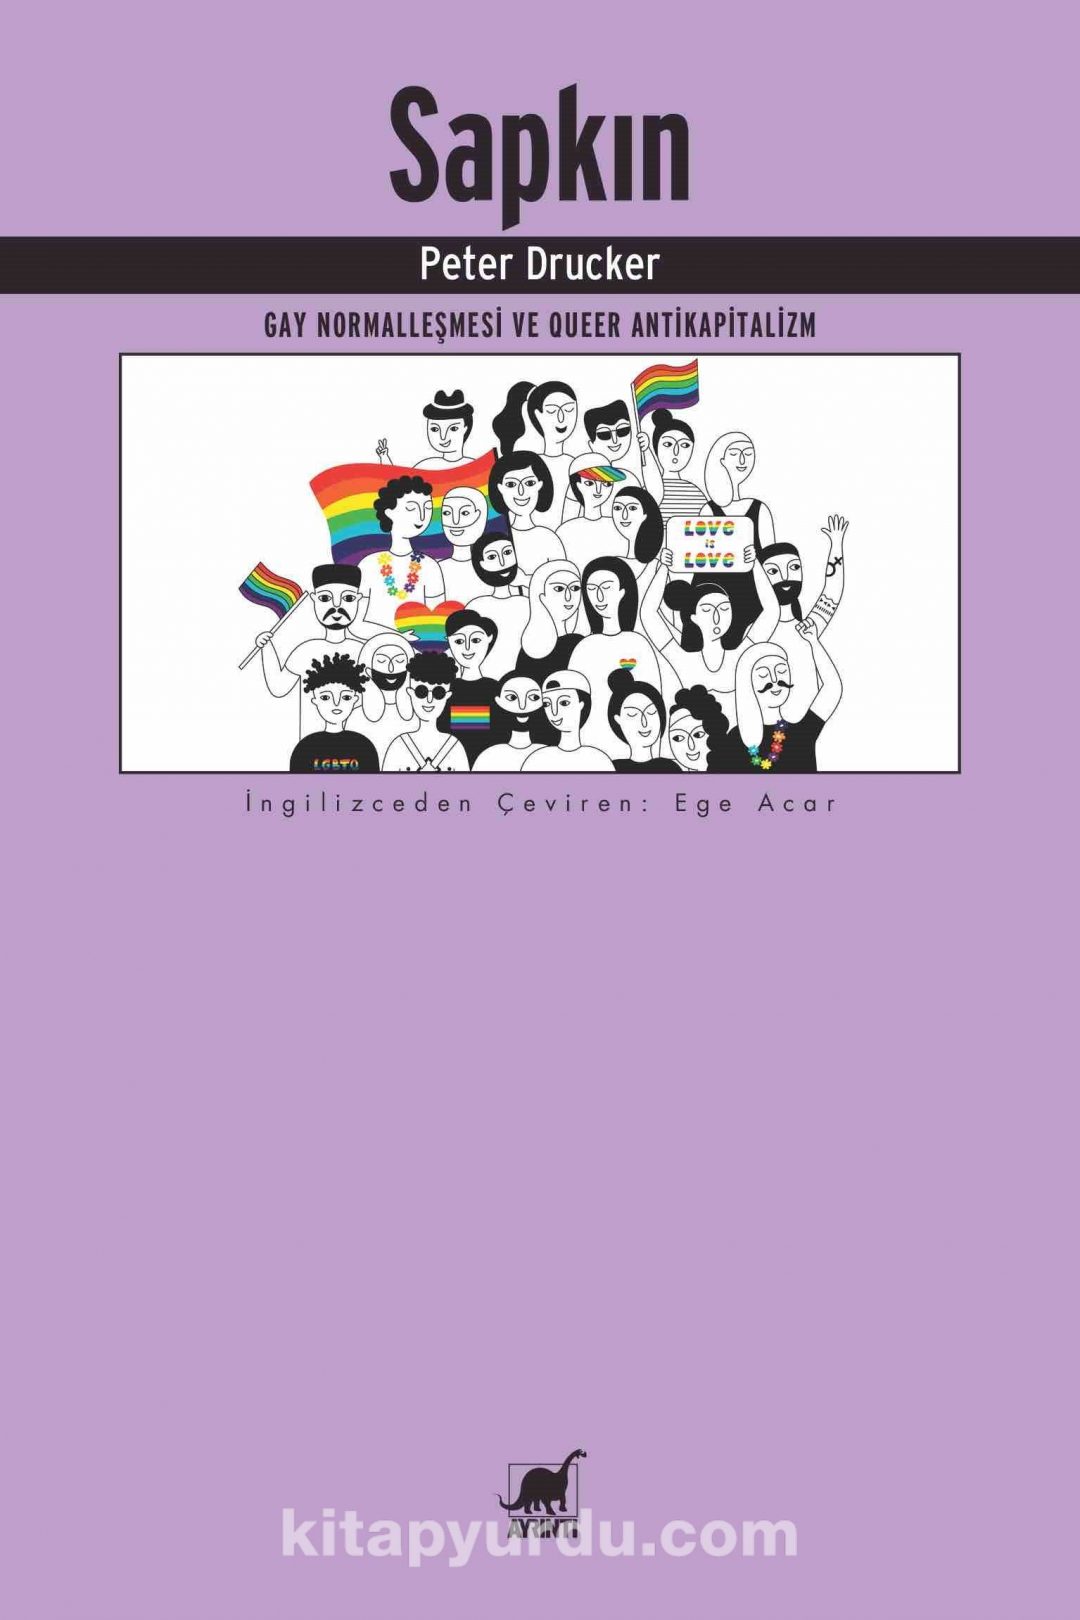 Sapkın & Gey Normalleşmesi ve Queer Antikapitalizm